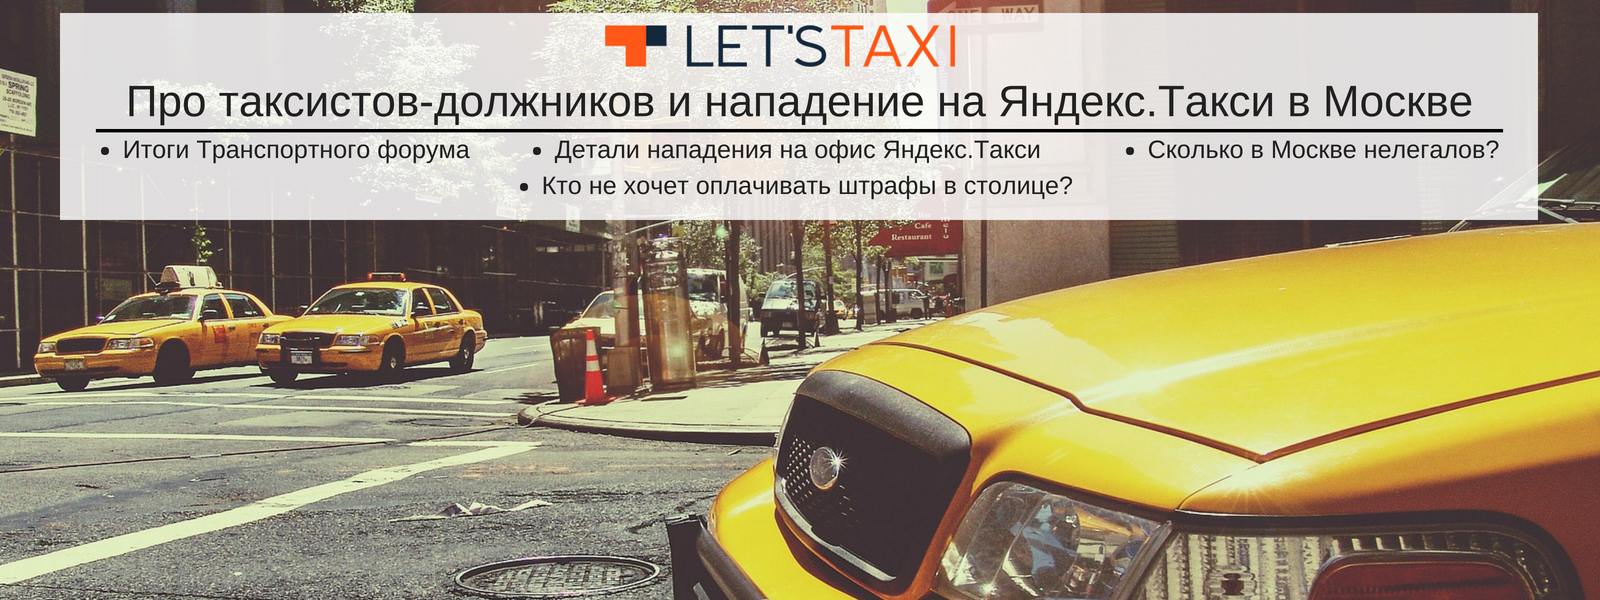 новости такси